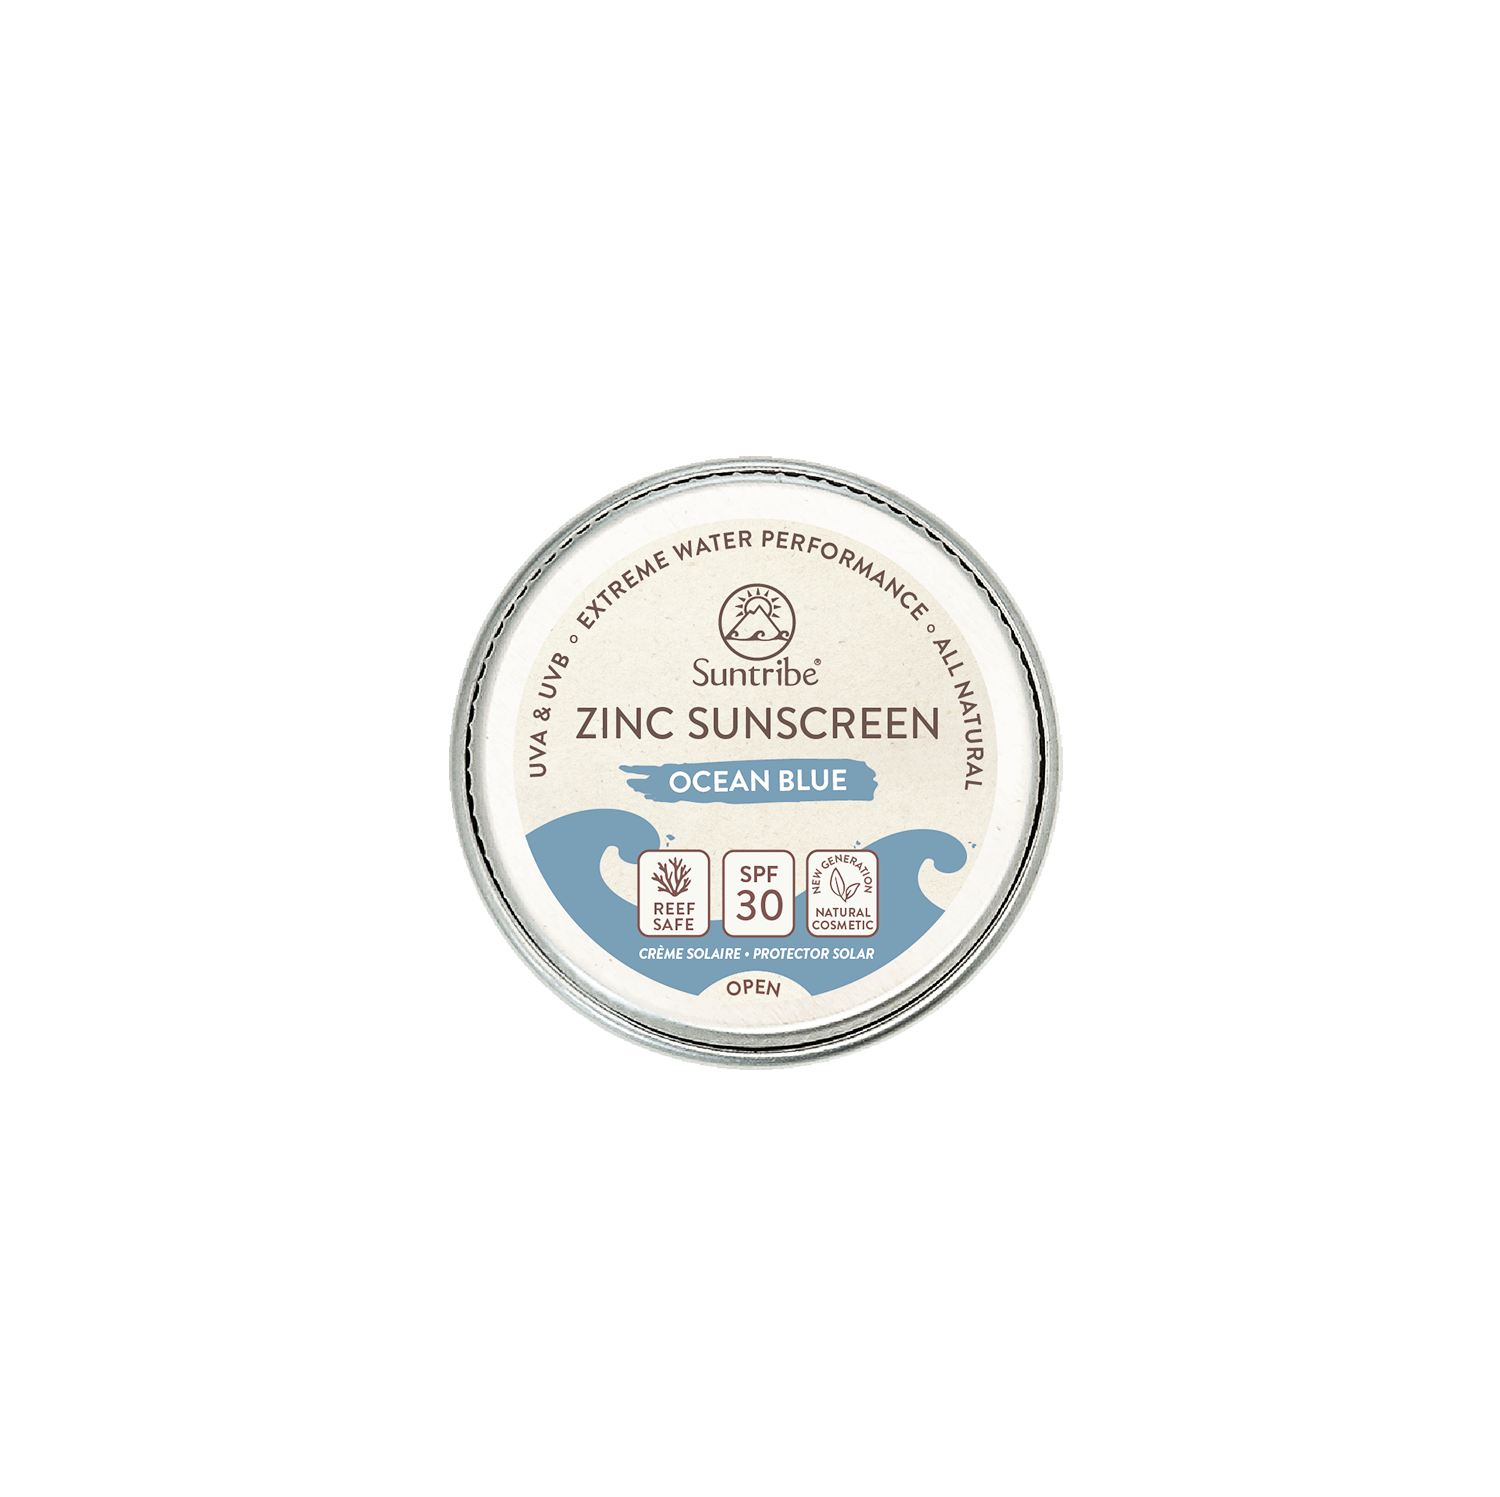 Zinc Sunscreen Mini Face & Sport SPF 30 - Ocean Blue, 15 g